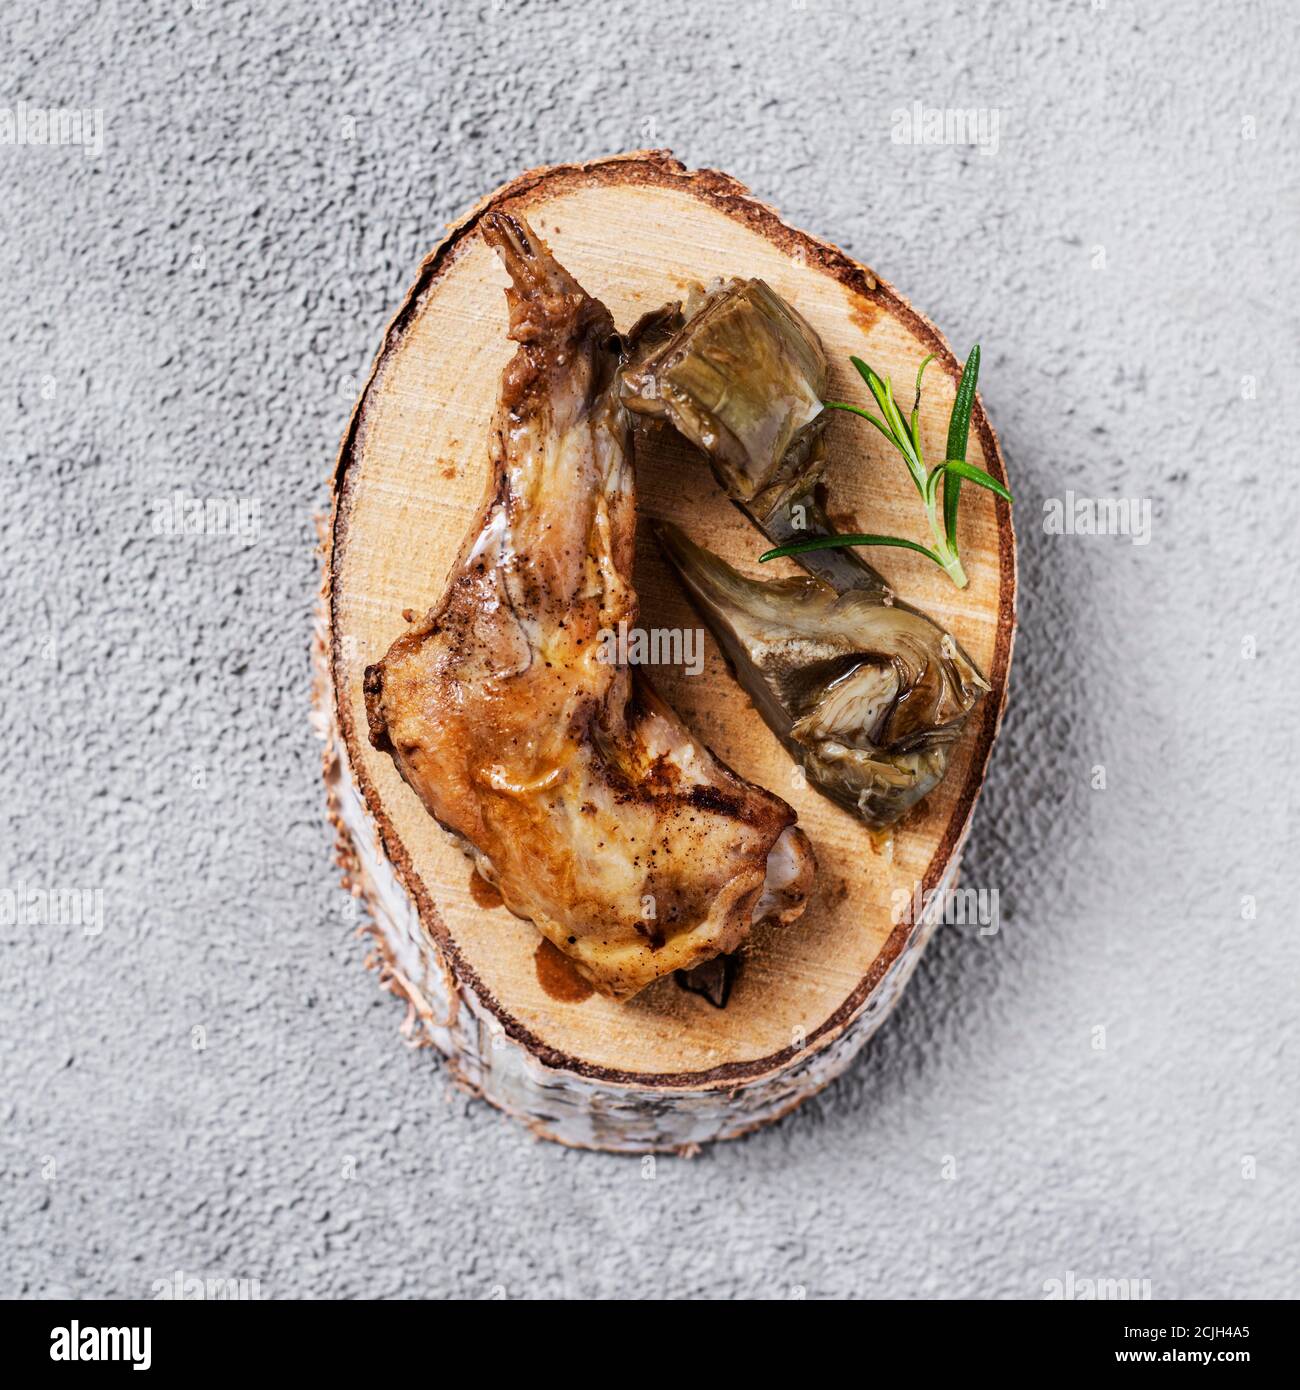 Vue en grand angle d'un morceau de lapin cuit, typiquement mangé en Espagne, et deux tranches d'artichaut sur un plateau en bois placé sur un béton texturé gris Banque D'Images